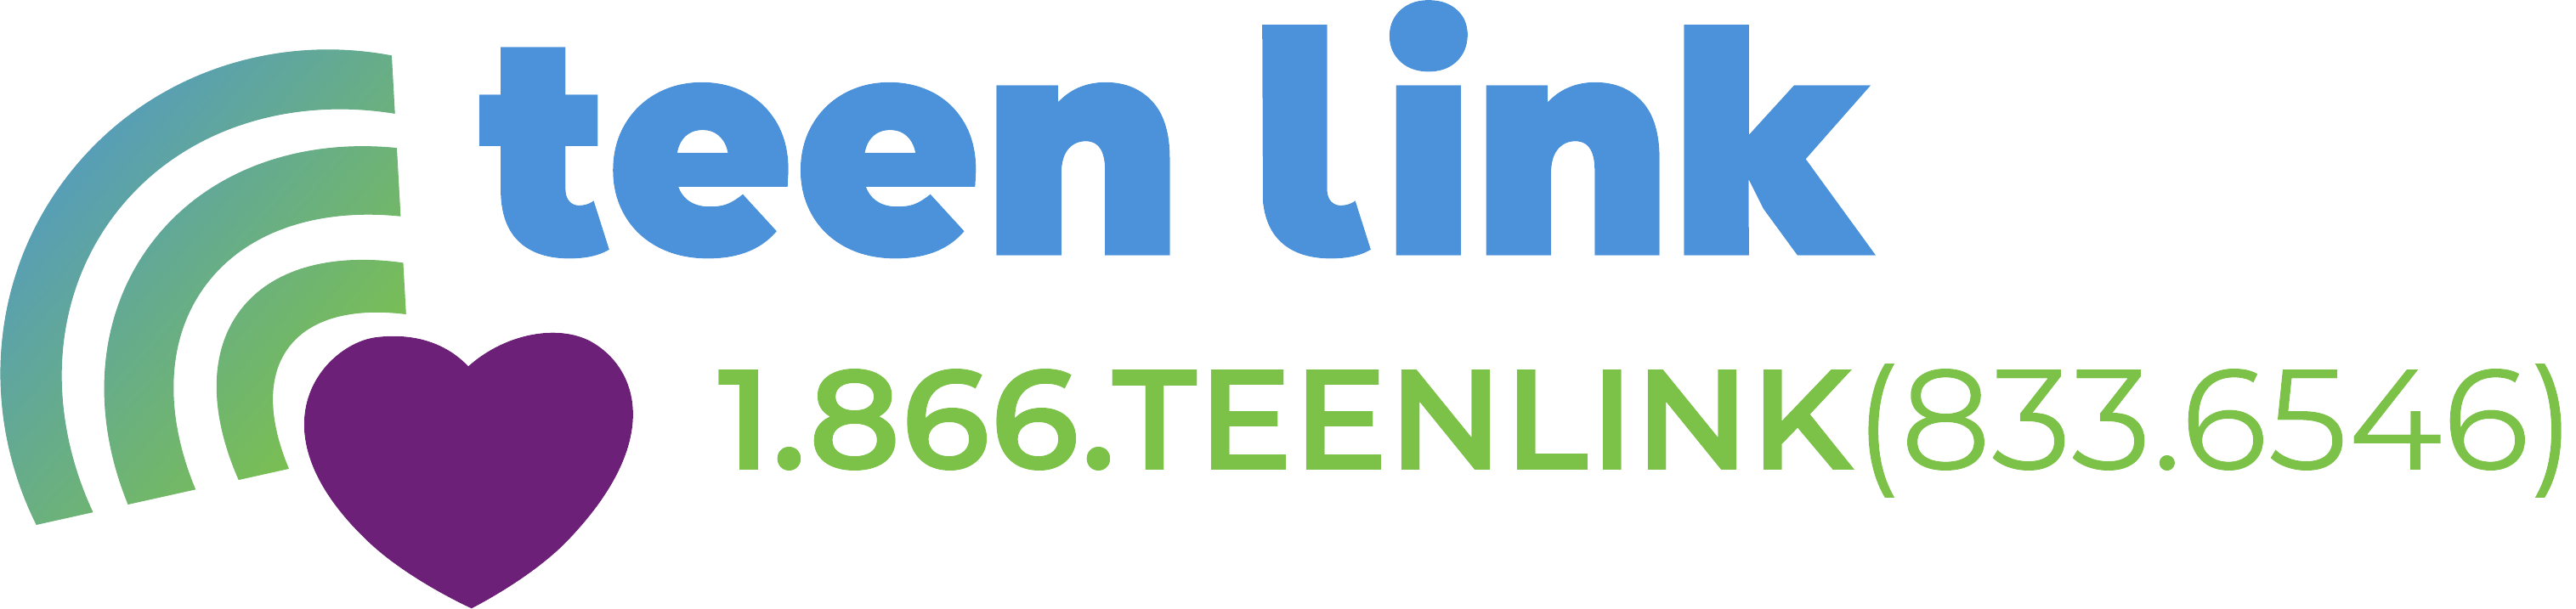 teen link